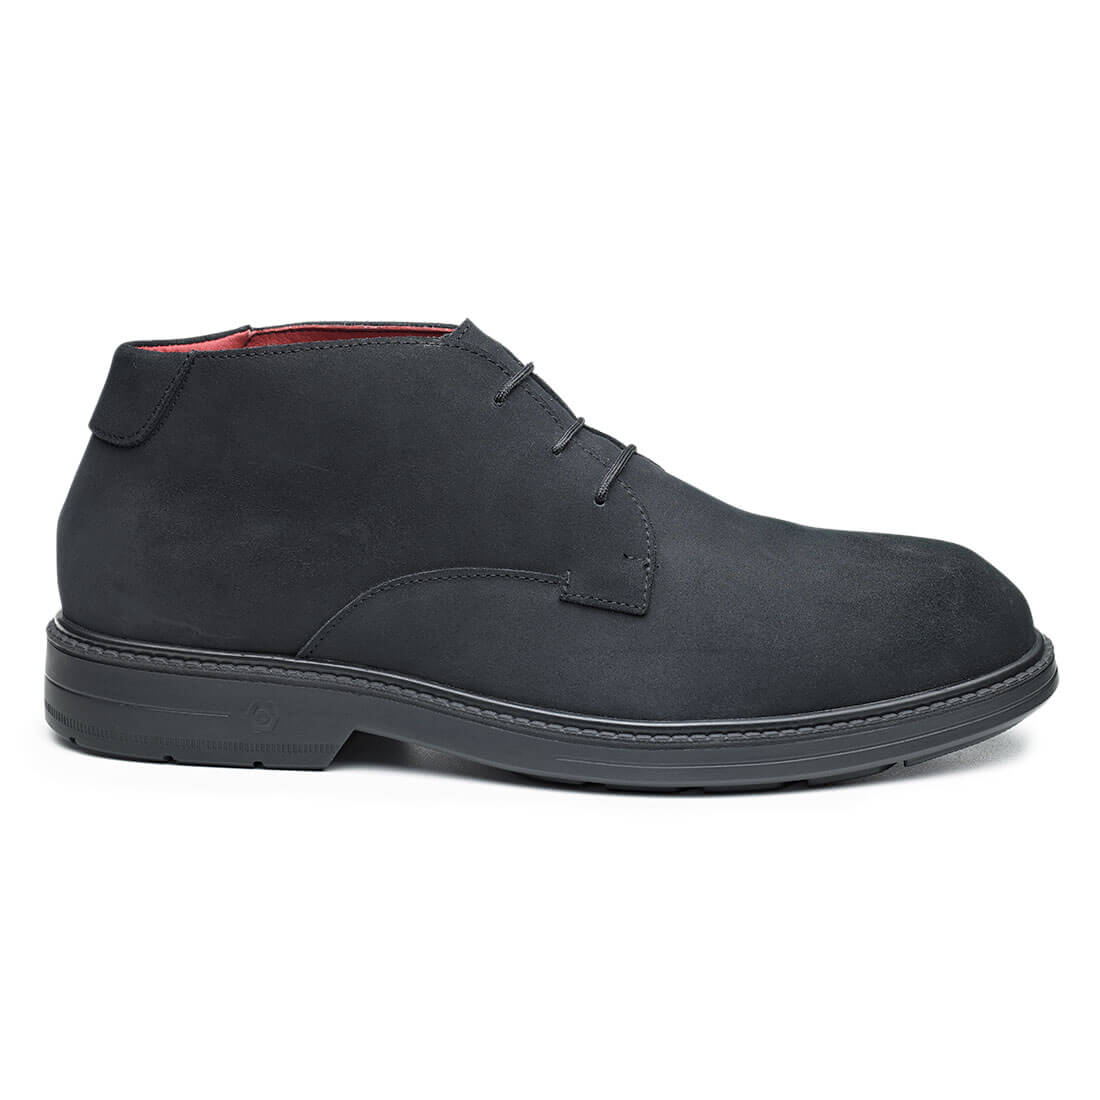 Base Orbit Toe Cap Work Safety Shoes Black 1#colour_black